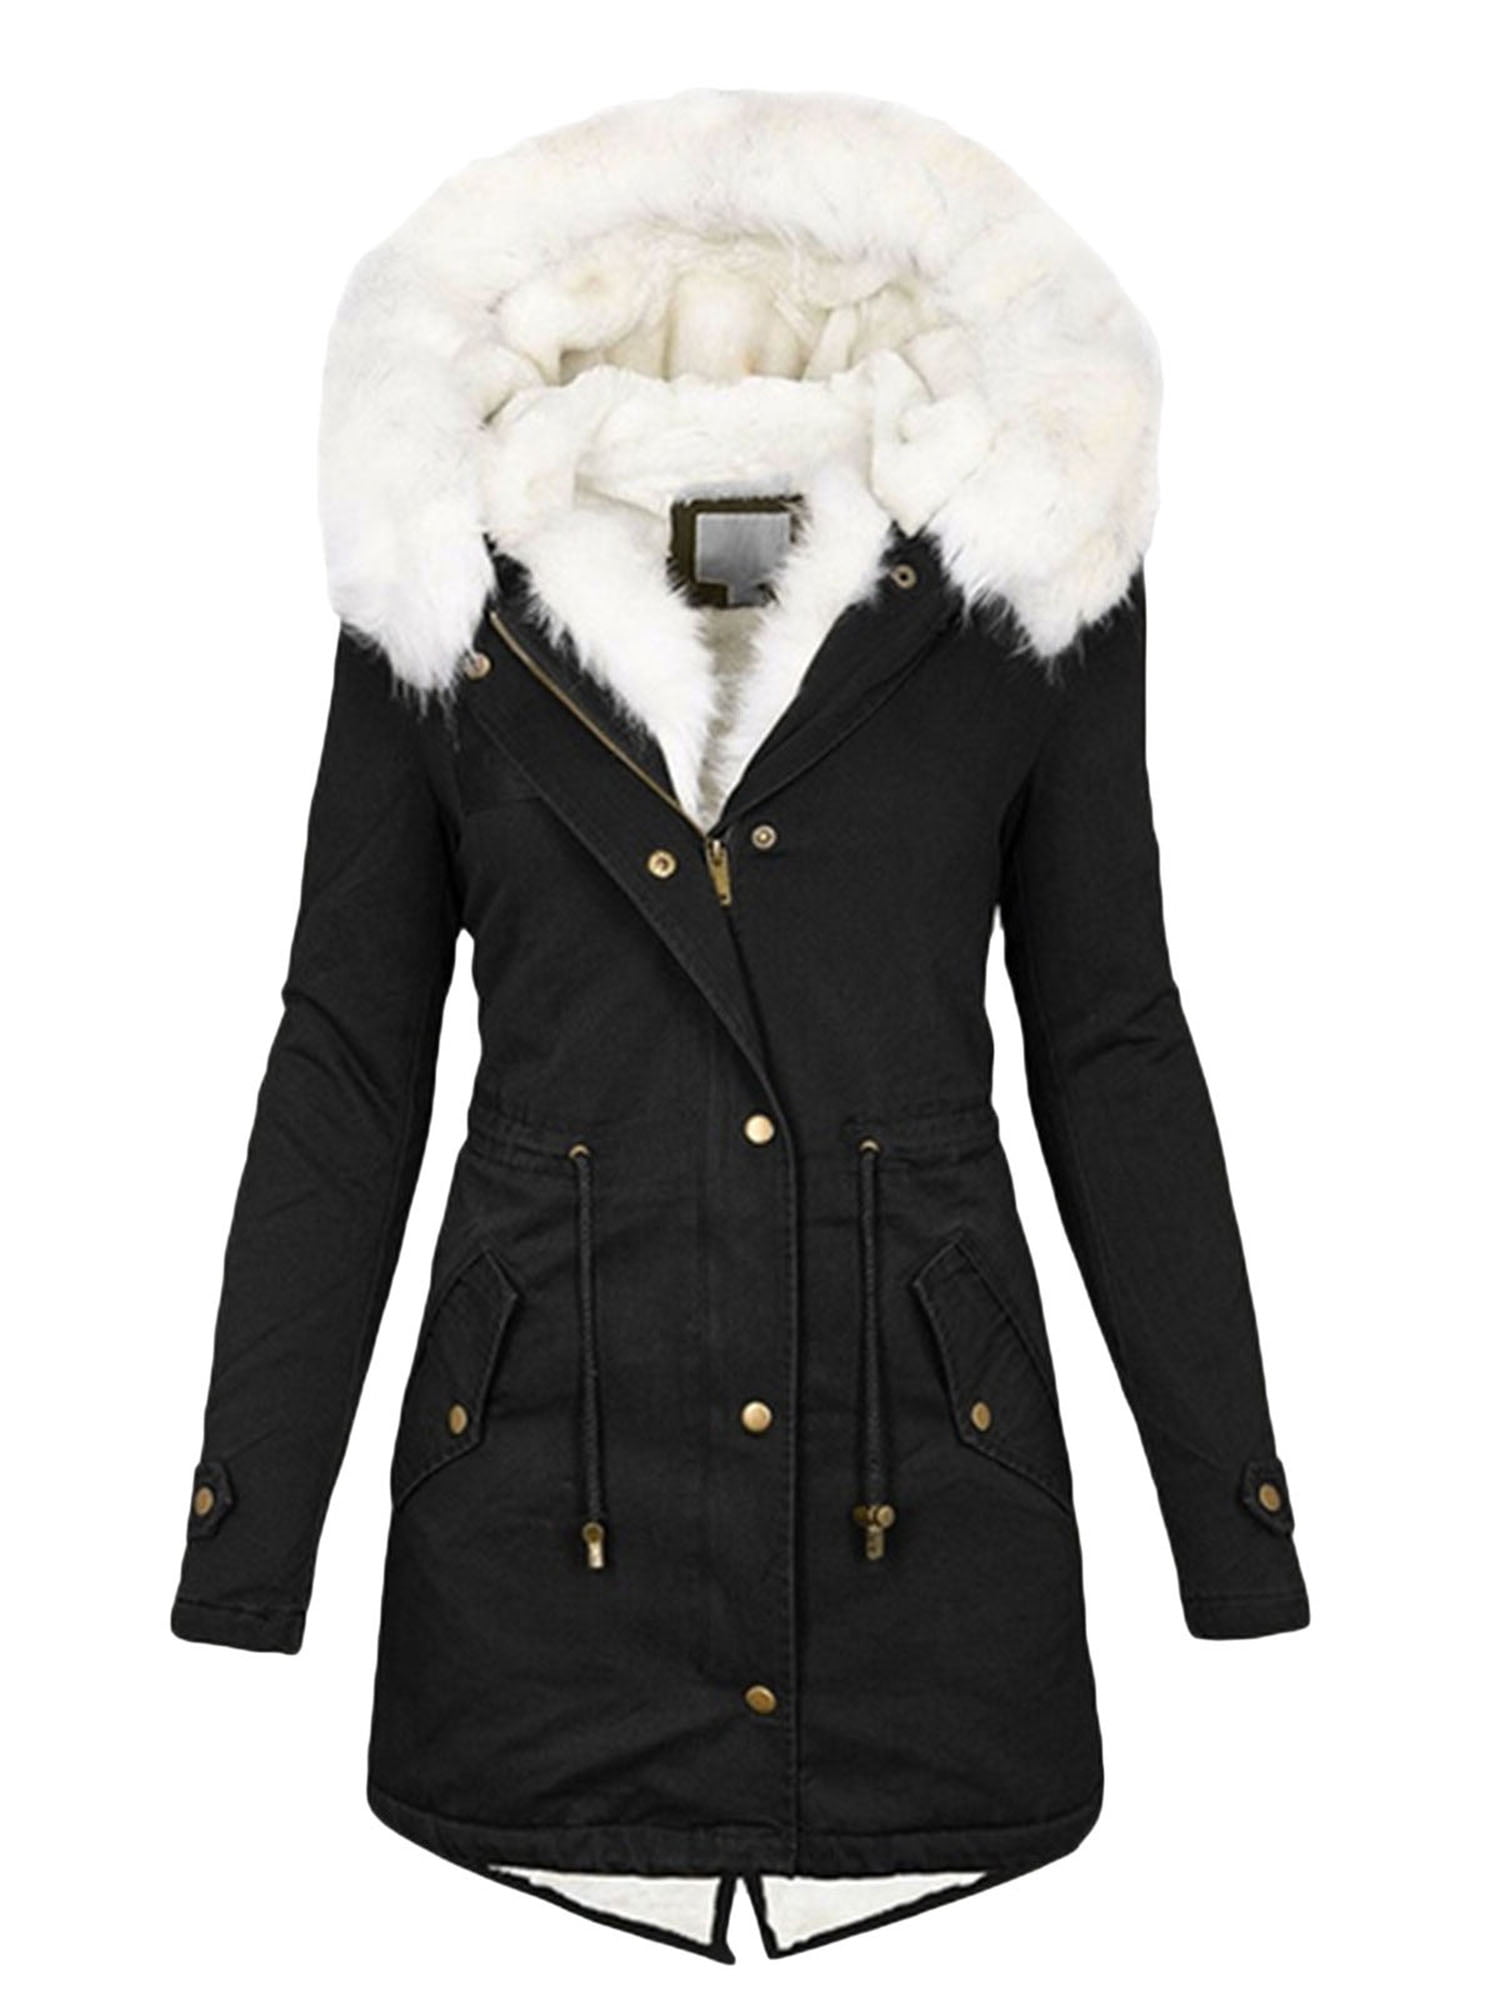 Licupiee Women Winter Hooded Thicken Puffer Coat Long Sleeve Zipper ...